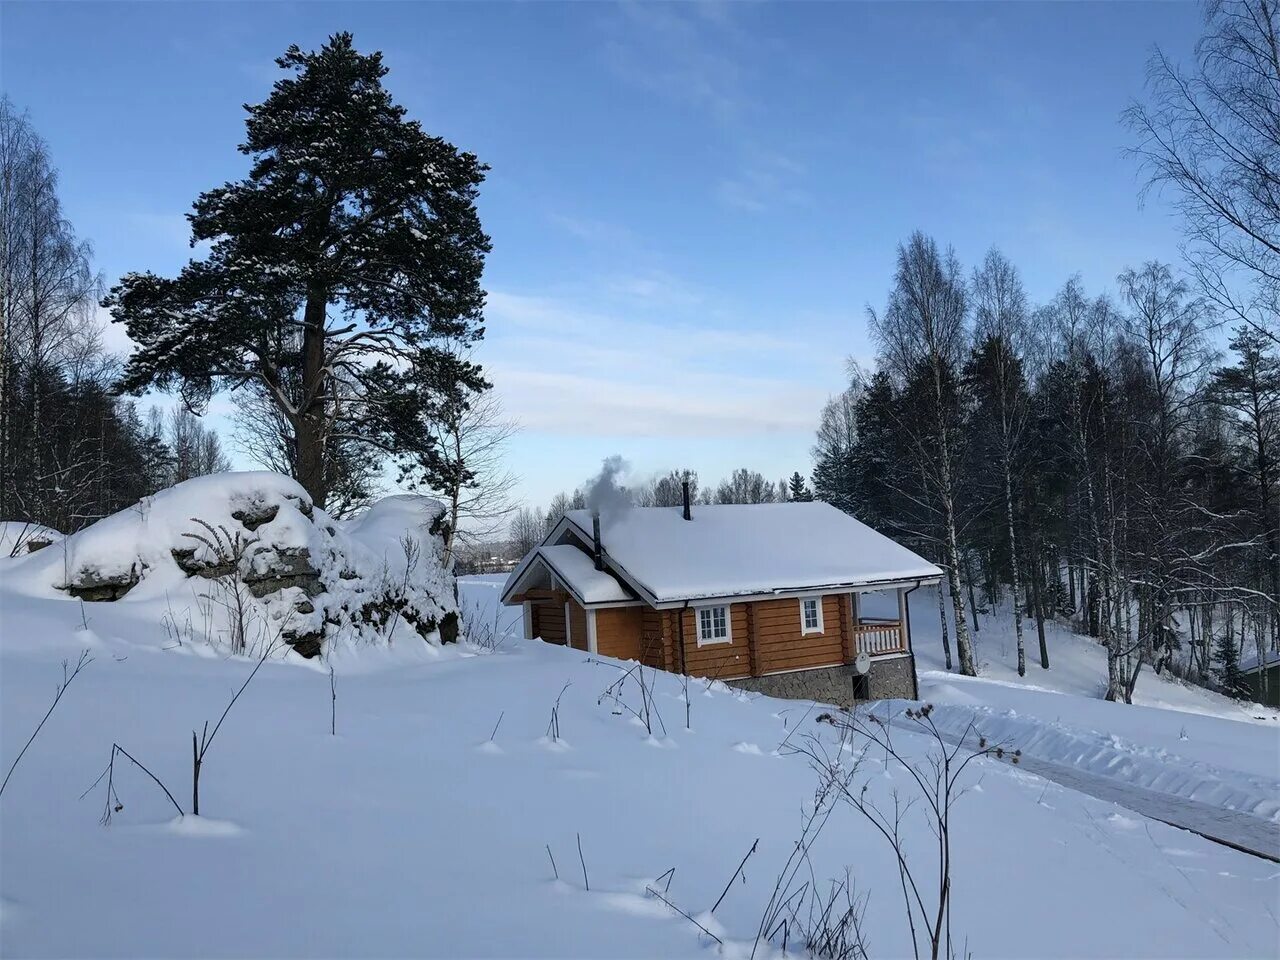 Сортавала хаапалампи. Поселок Реускула Карелия. Forest Lodge Karelia. Forrest Lodge Karelia база отдыха в Карелии. Реускула Сортавала.